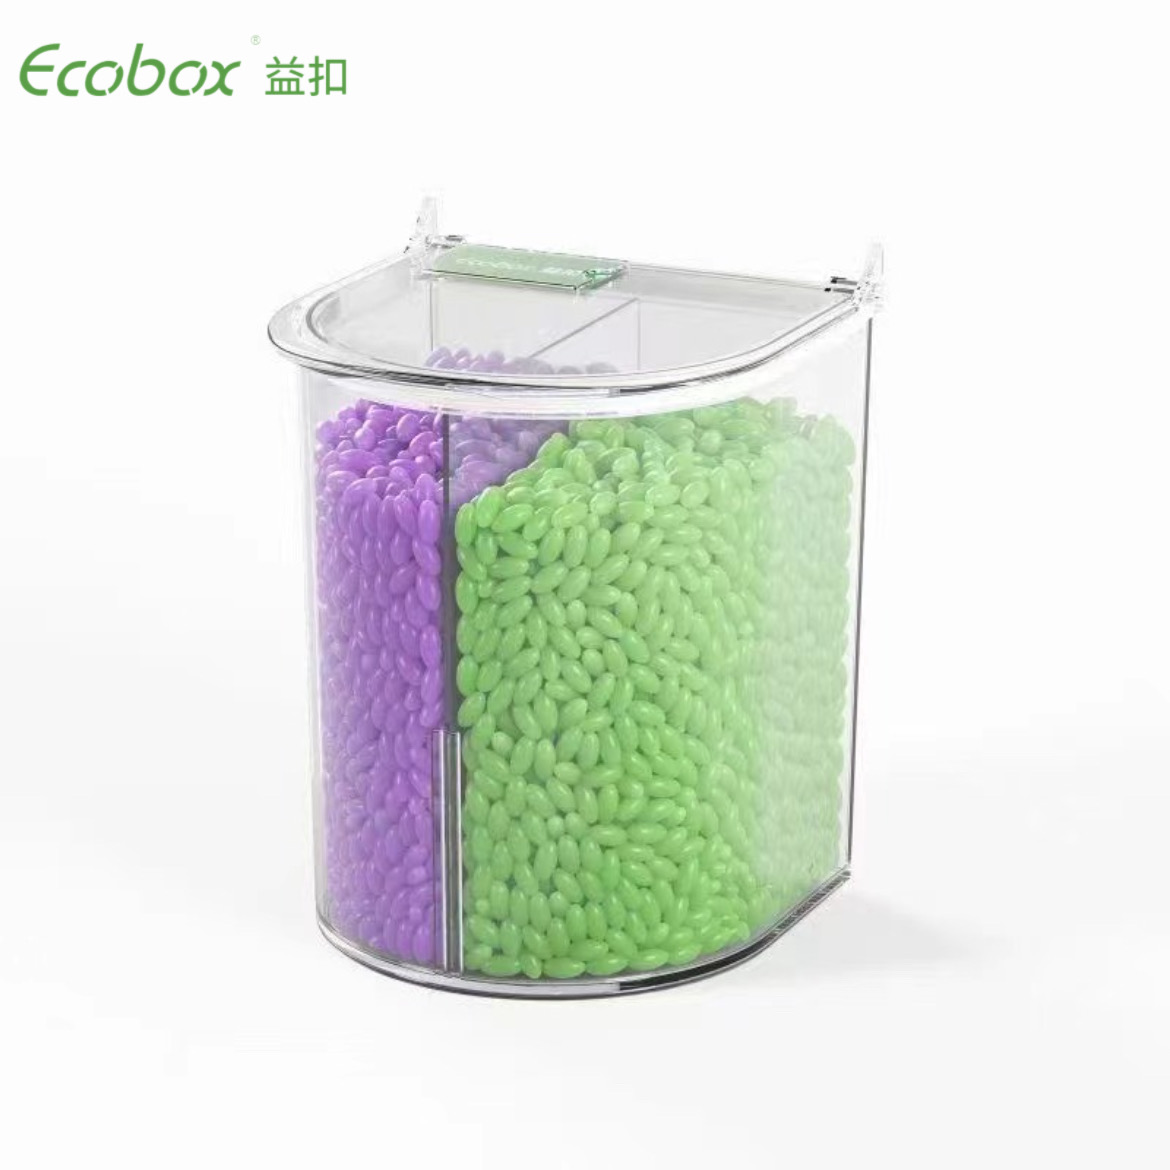 Ecobox MY-0101C Stapelbarer Supermarkt-Großbehälter für große Lebensmittel und Süßigkeiten